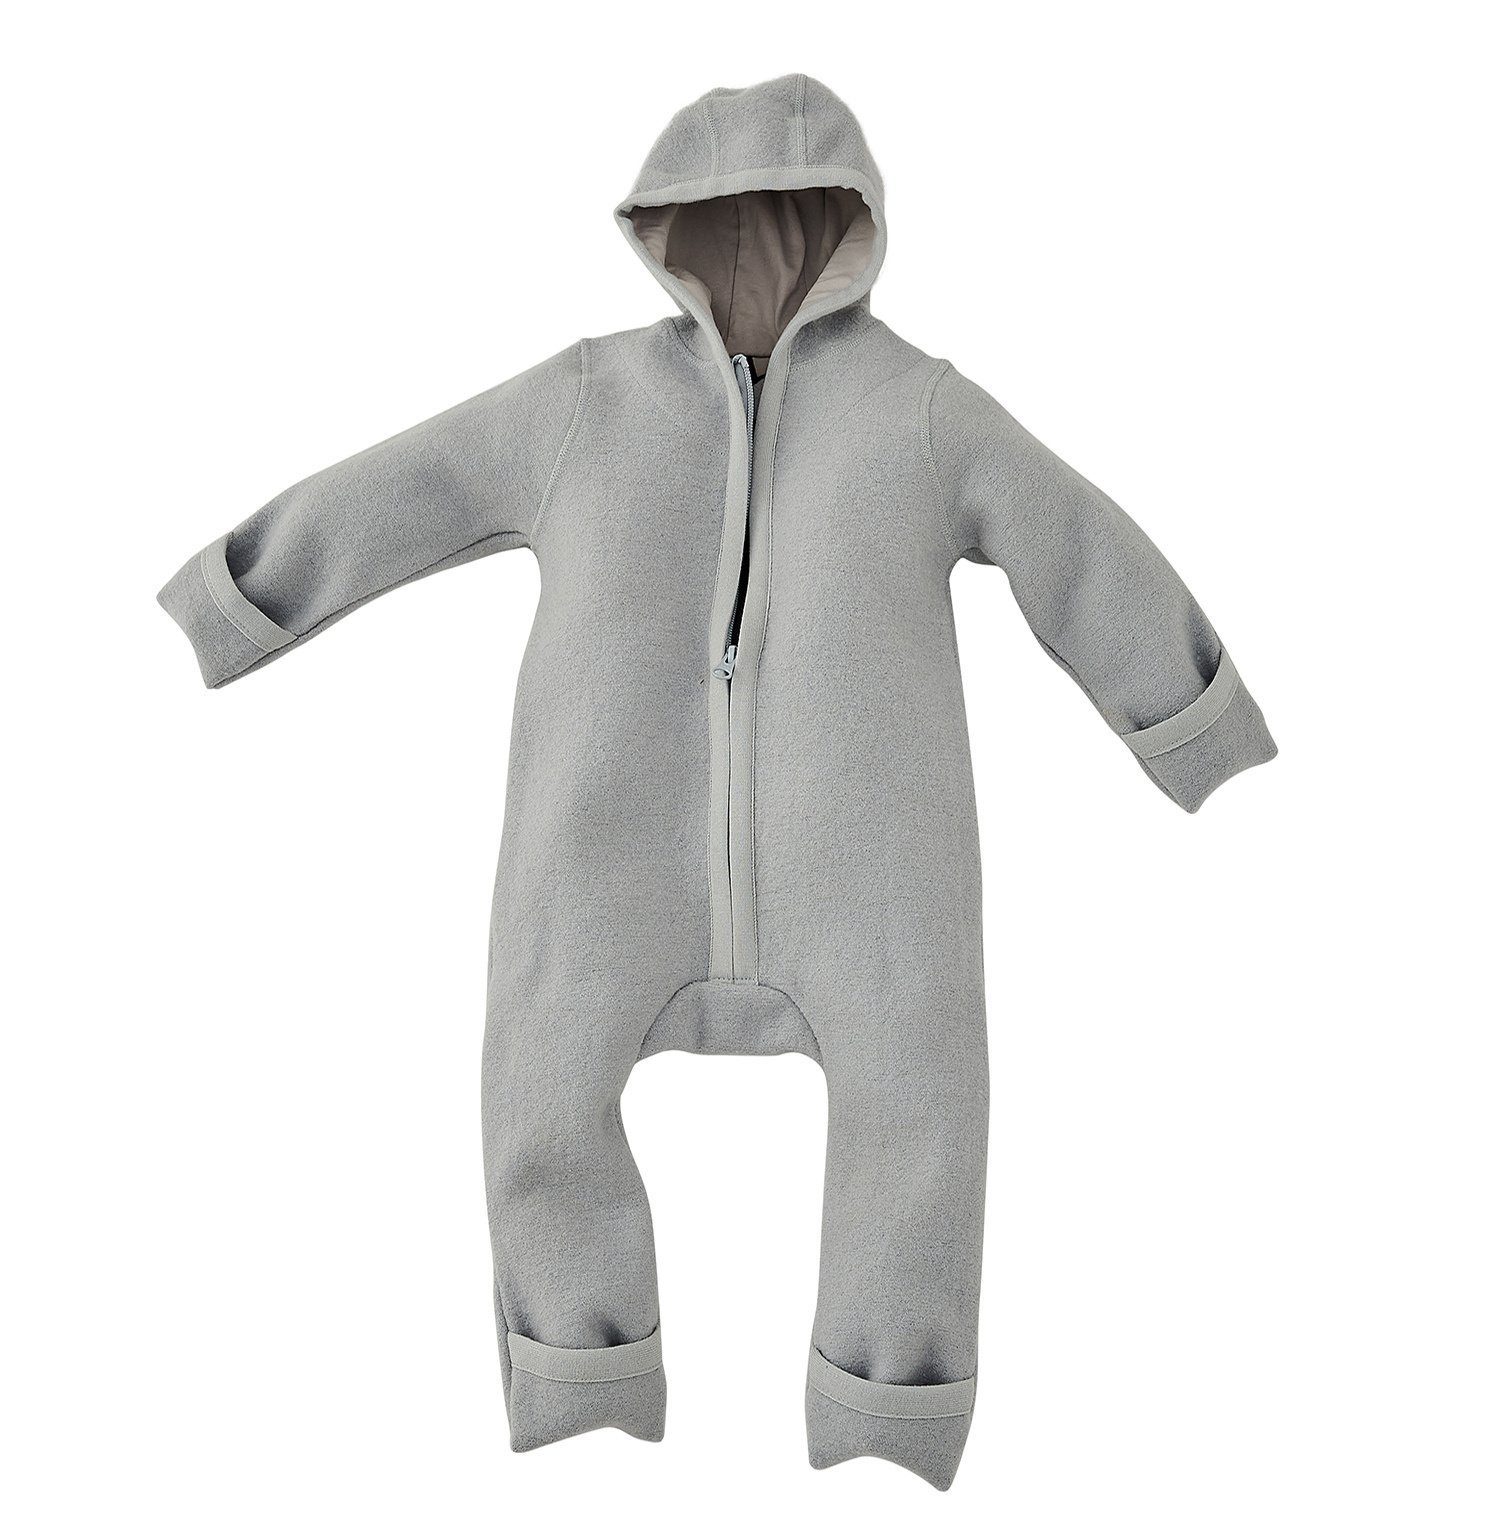 Alavya Panda Overall WALKOVERALL, Baby Wollwalk-Overalls aus Natur 100% Bio-Schurwolle Wollfleece mit Reißverschluss, Walk Woll-Anzug für Kleinkind und Baby Grau